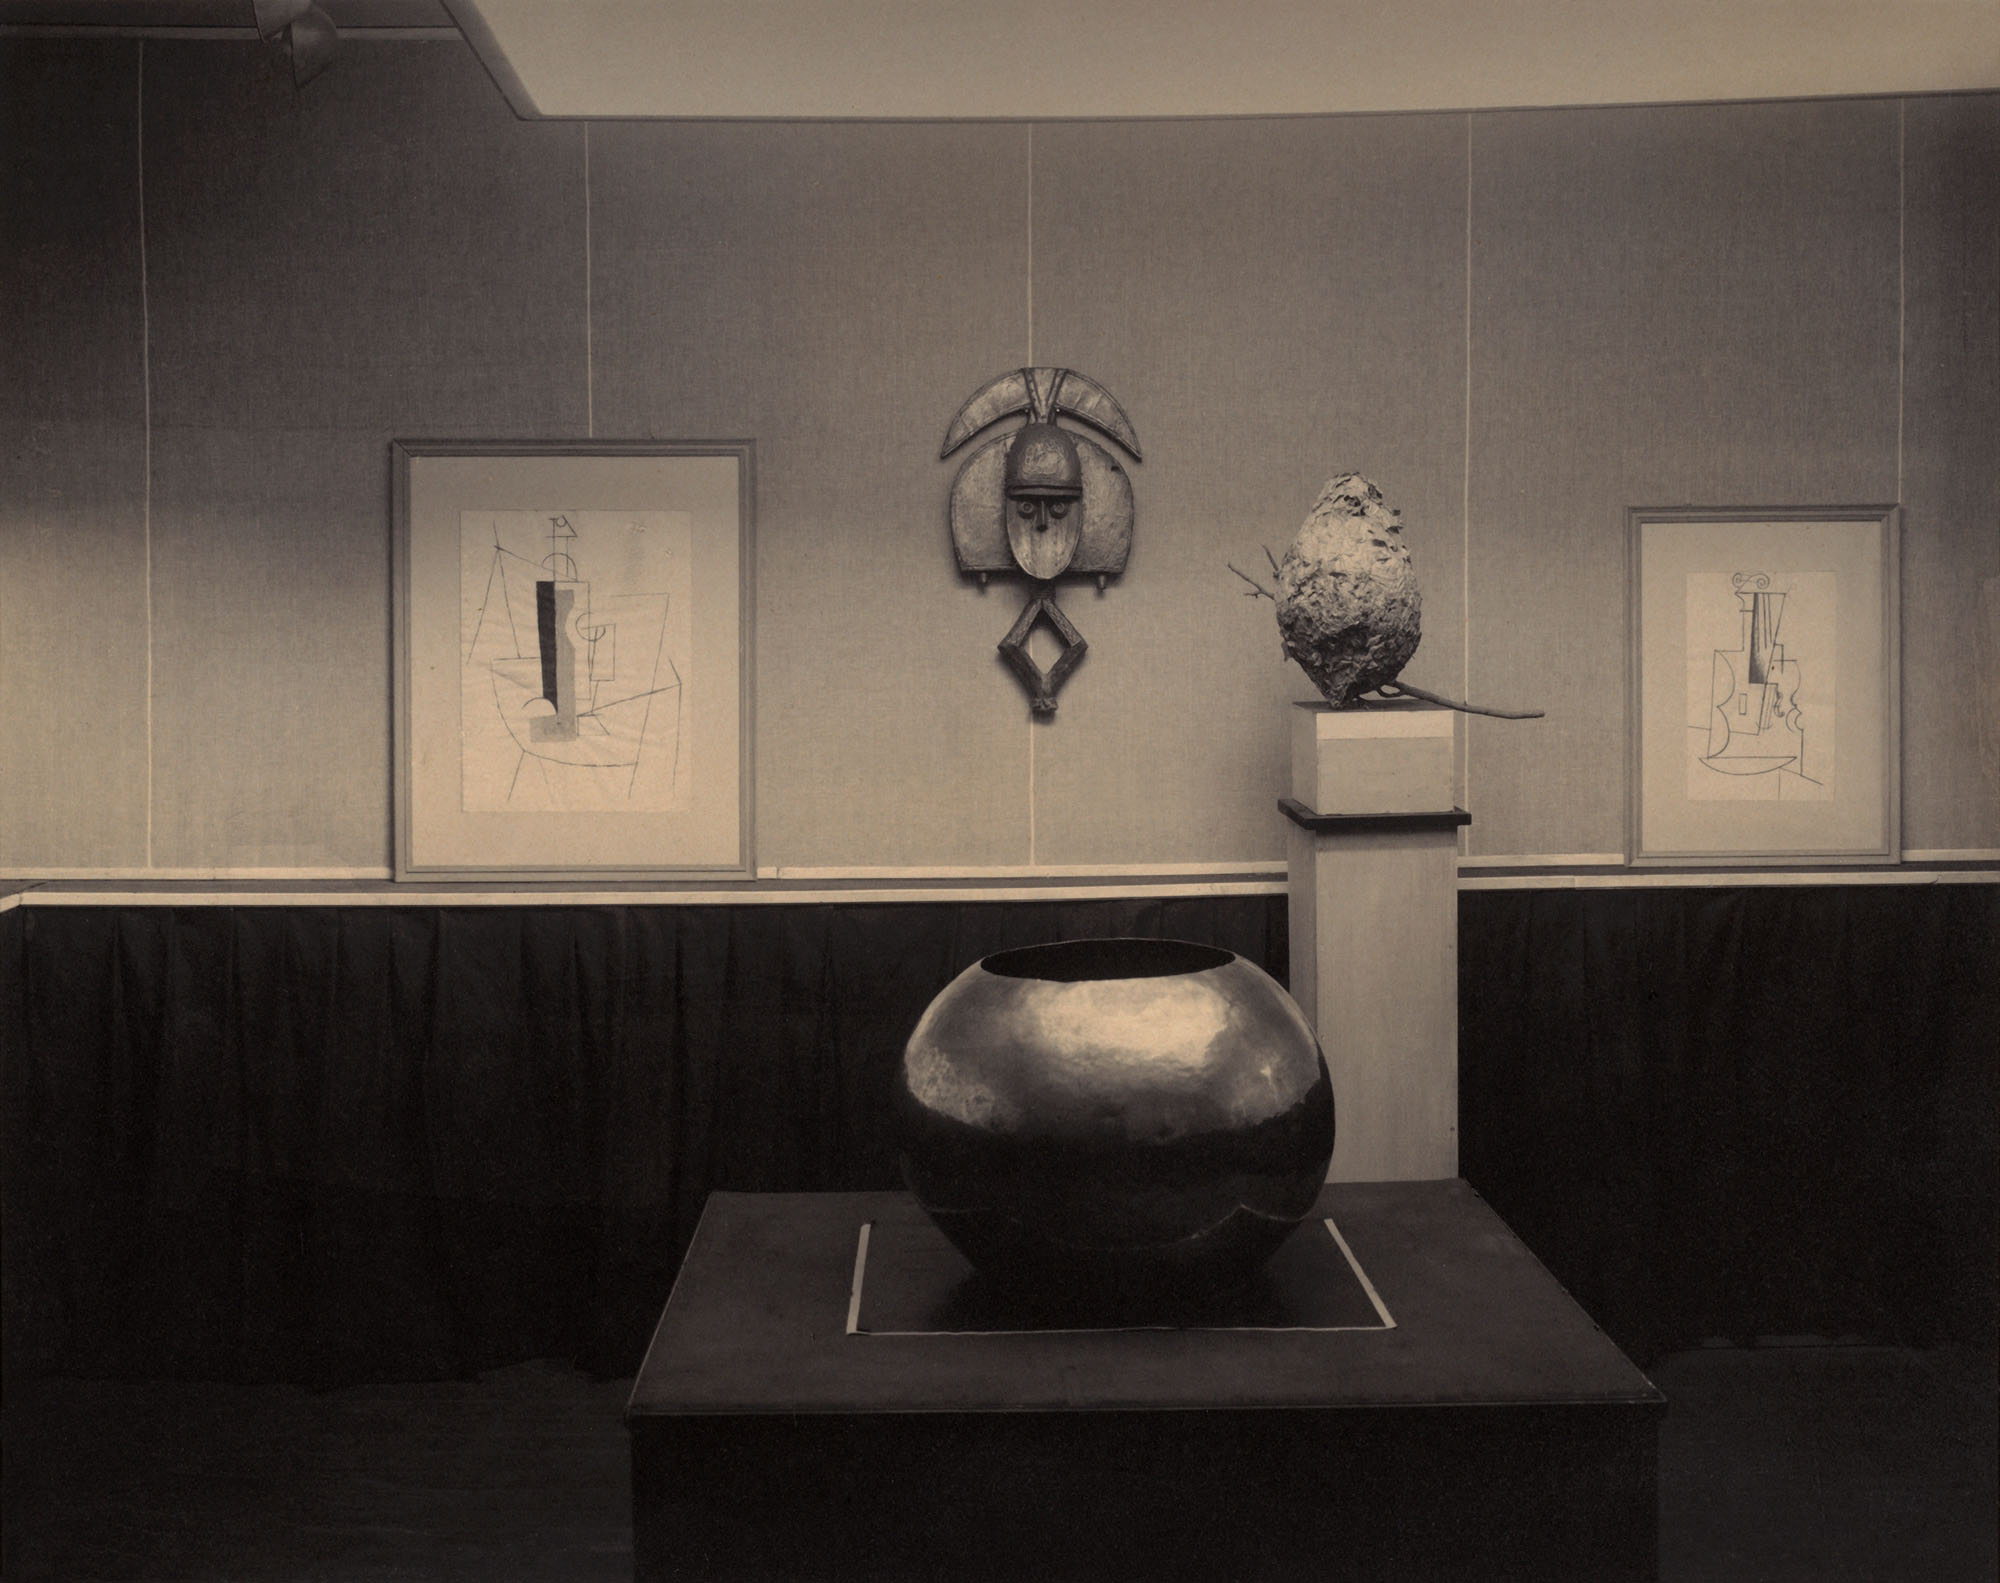 Alfred Stieglitz (American, 1864-1946) '291 – Picasso-Braque Exhibition' 1915